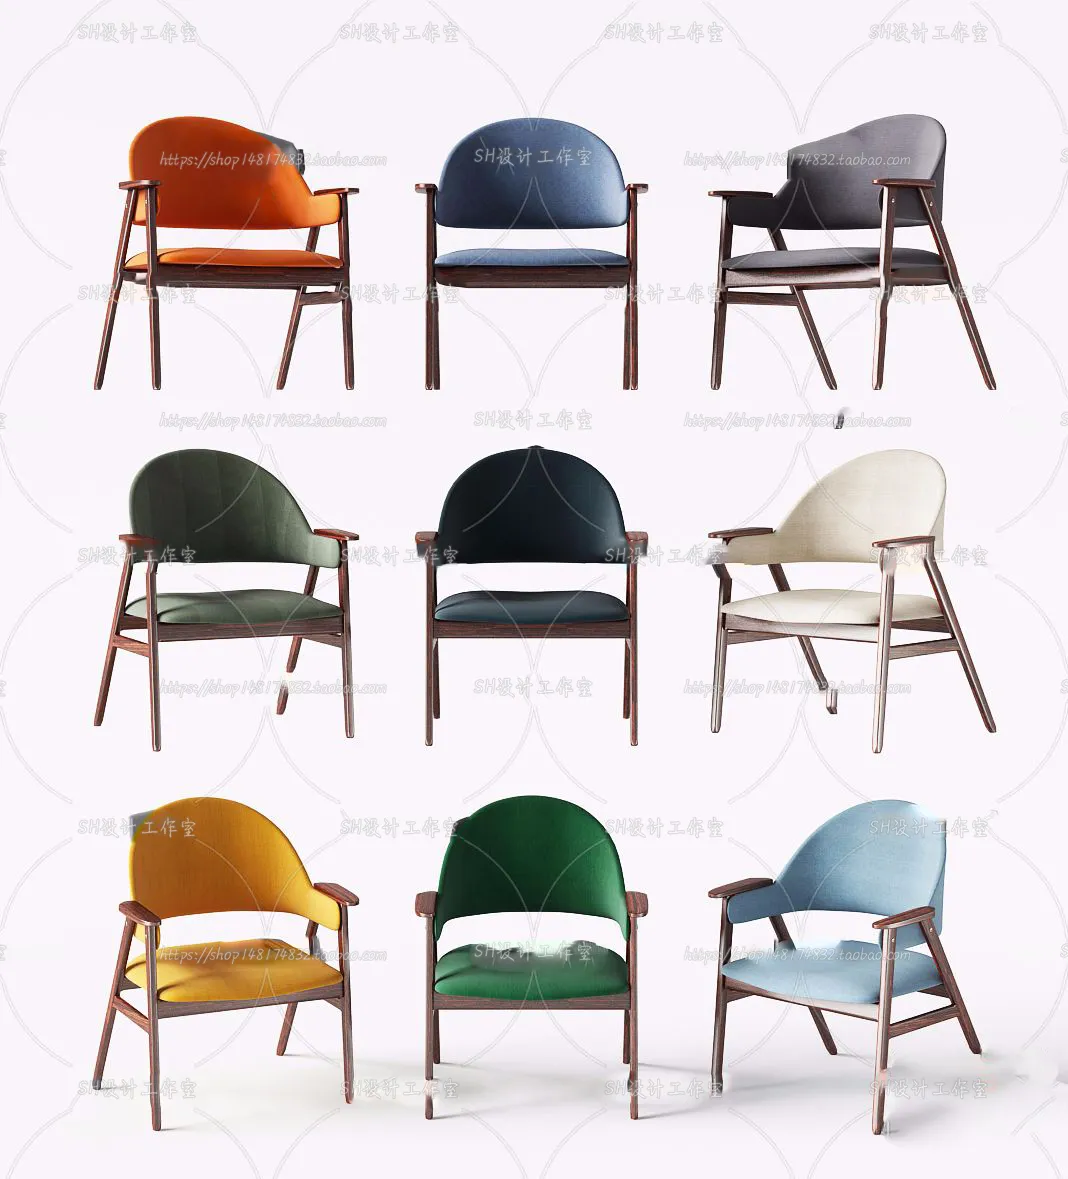 Chair – Single Chair 3D Models – 1925